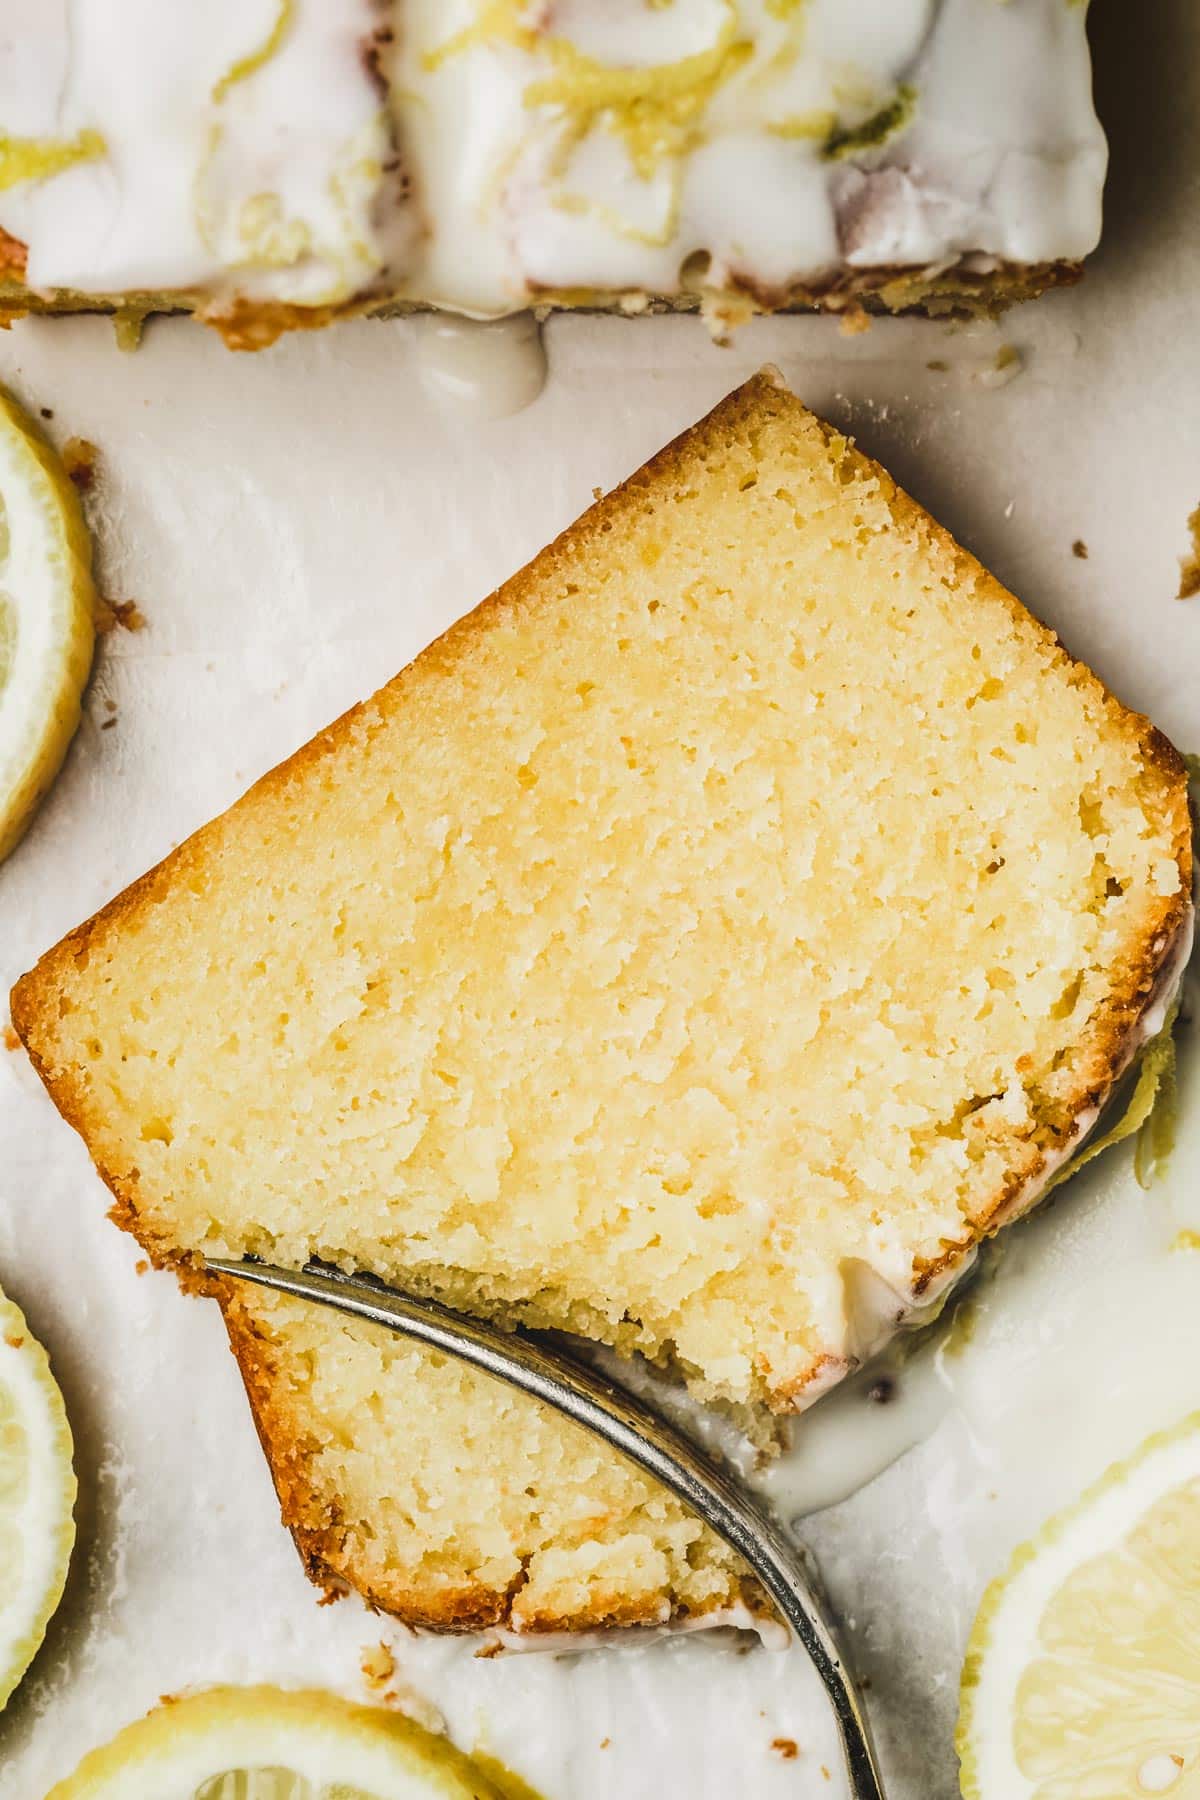 Slice of lemon loaf cake on a table